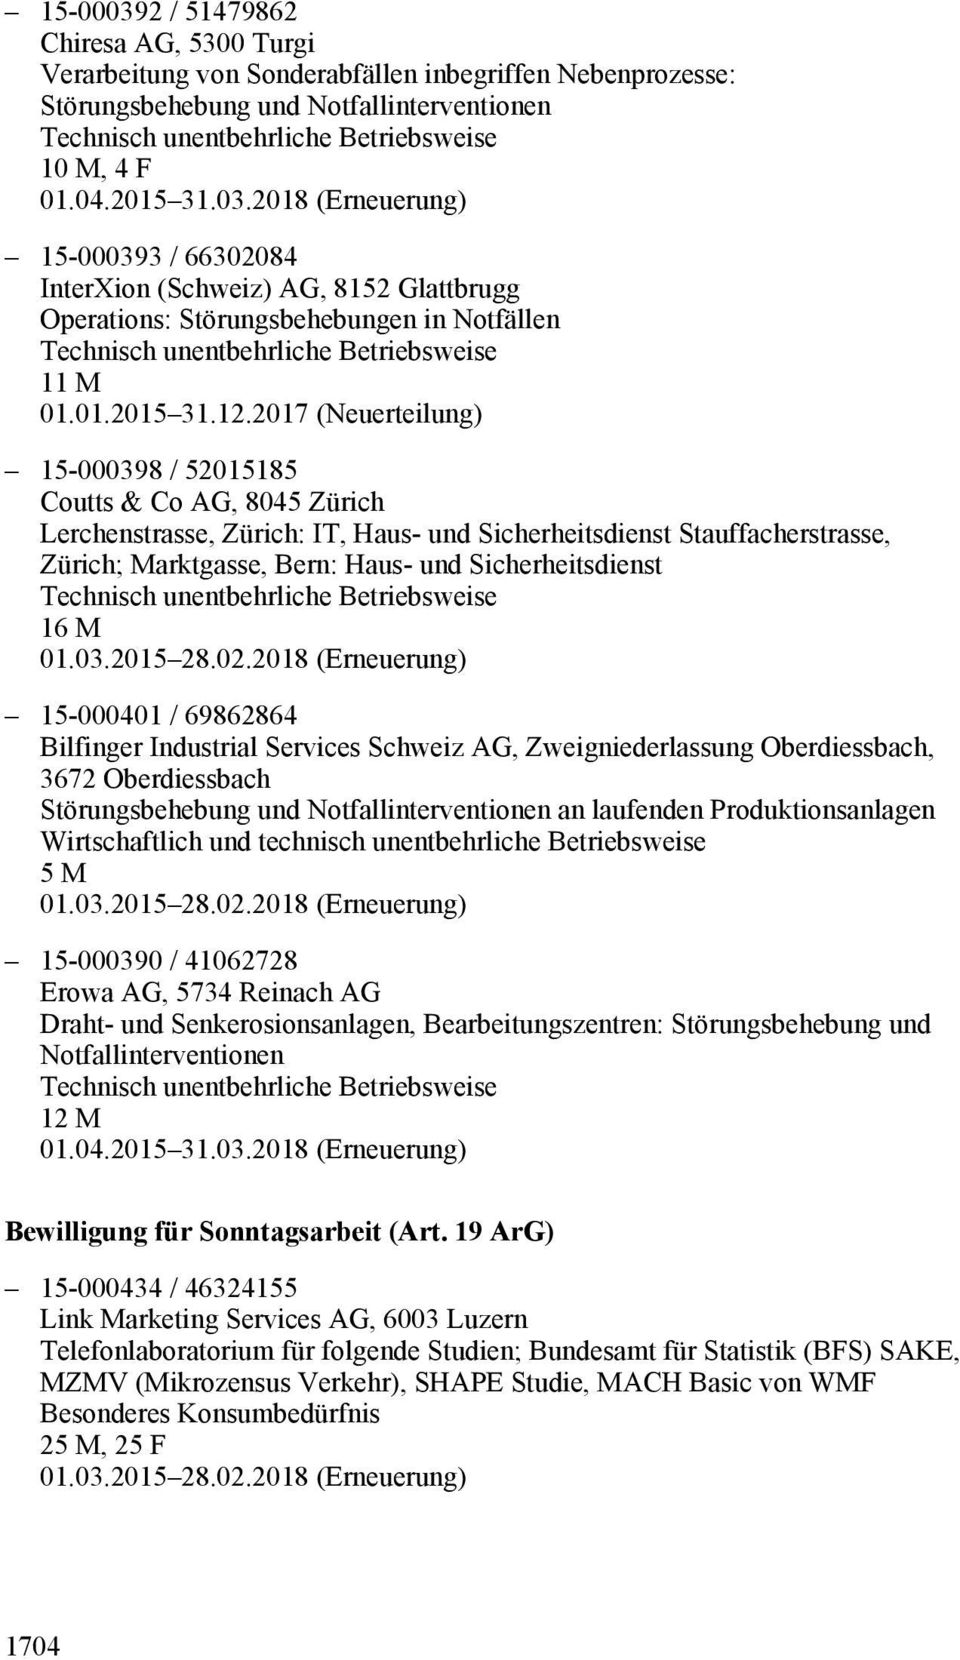 2017 (Neuerteilung) 15-000398 / 52015185 Coutts & Co AG, 8045 Zürich Lerchenstrasse, Zürich: IT, Haus- und Sicherheitsdienst Stauffacherstrasse, Zürich; Marktgasse, Bern: Haus- und Sicherheitsdienst